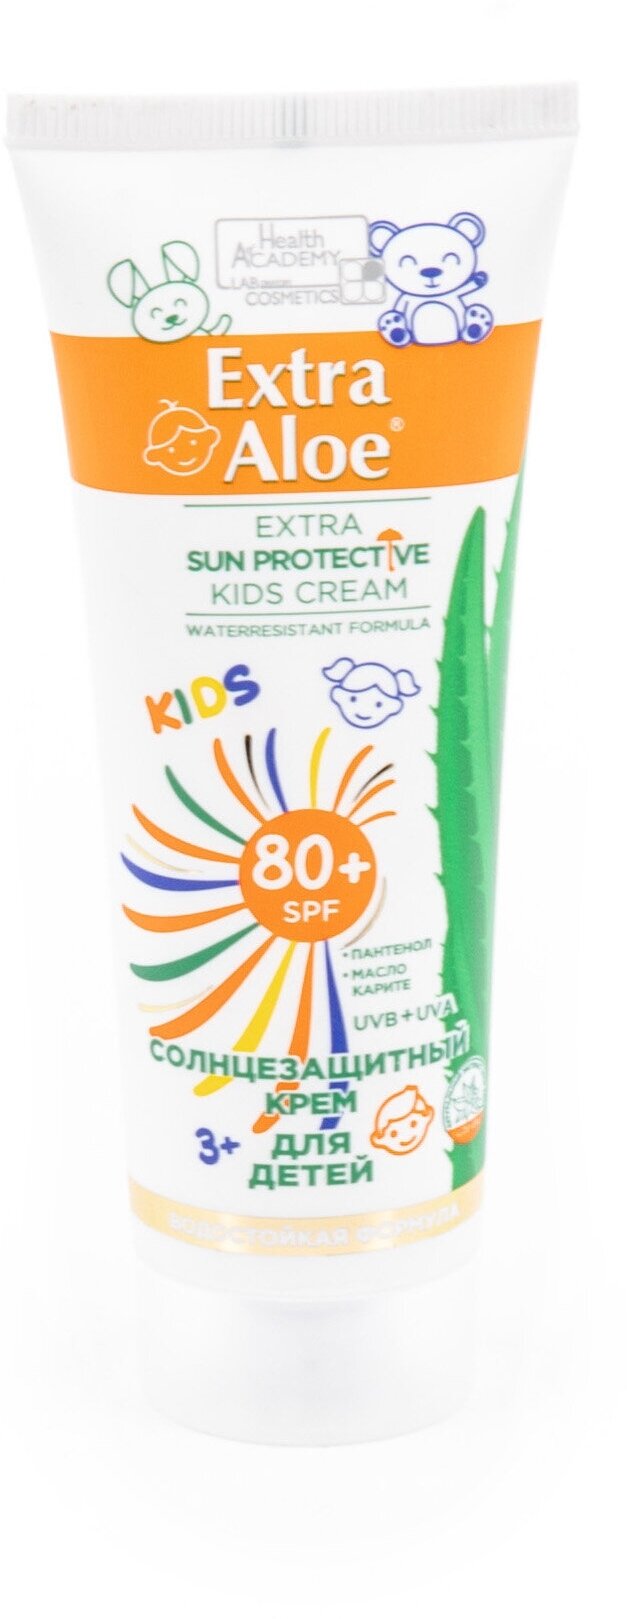 Фэмили косметик Extra Aloe Солнцезащитный крем для детей SPF80+ для чувствительной кожи с пантенолом, маслом карите и экстрактом алоэ вера, туба